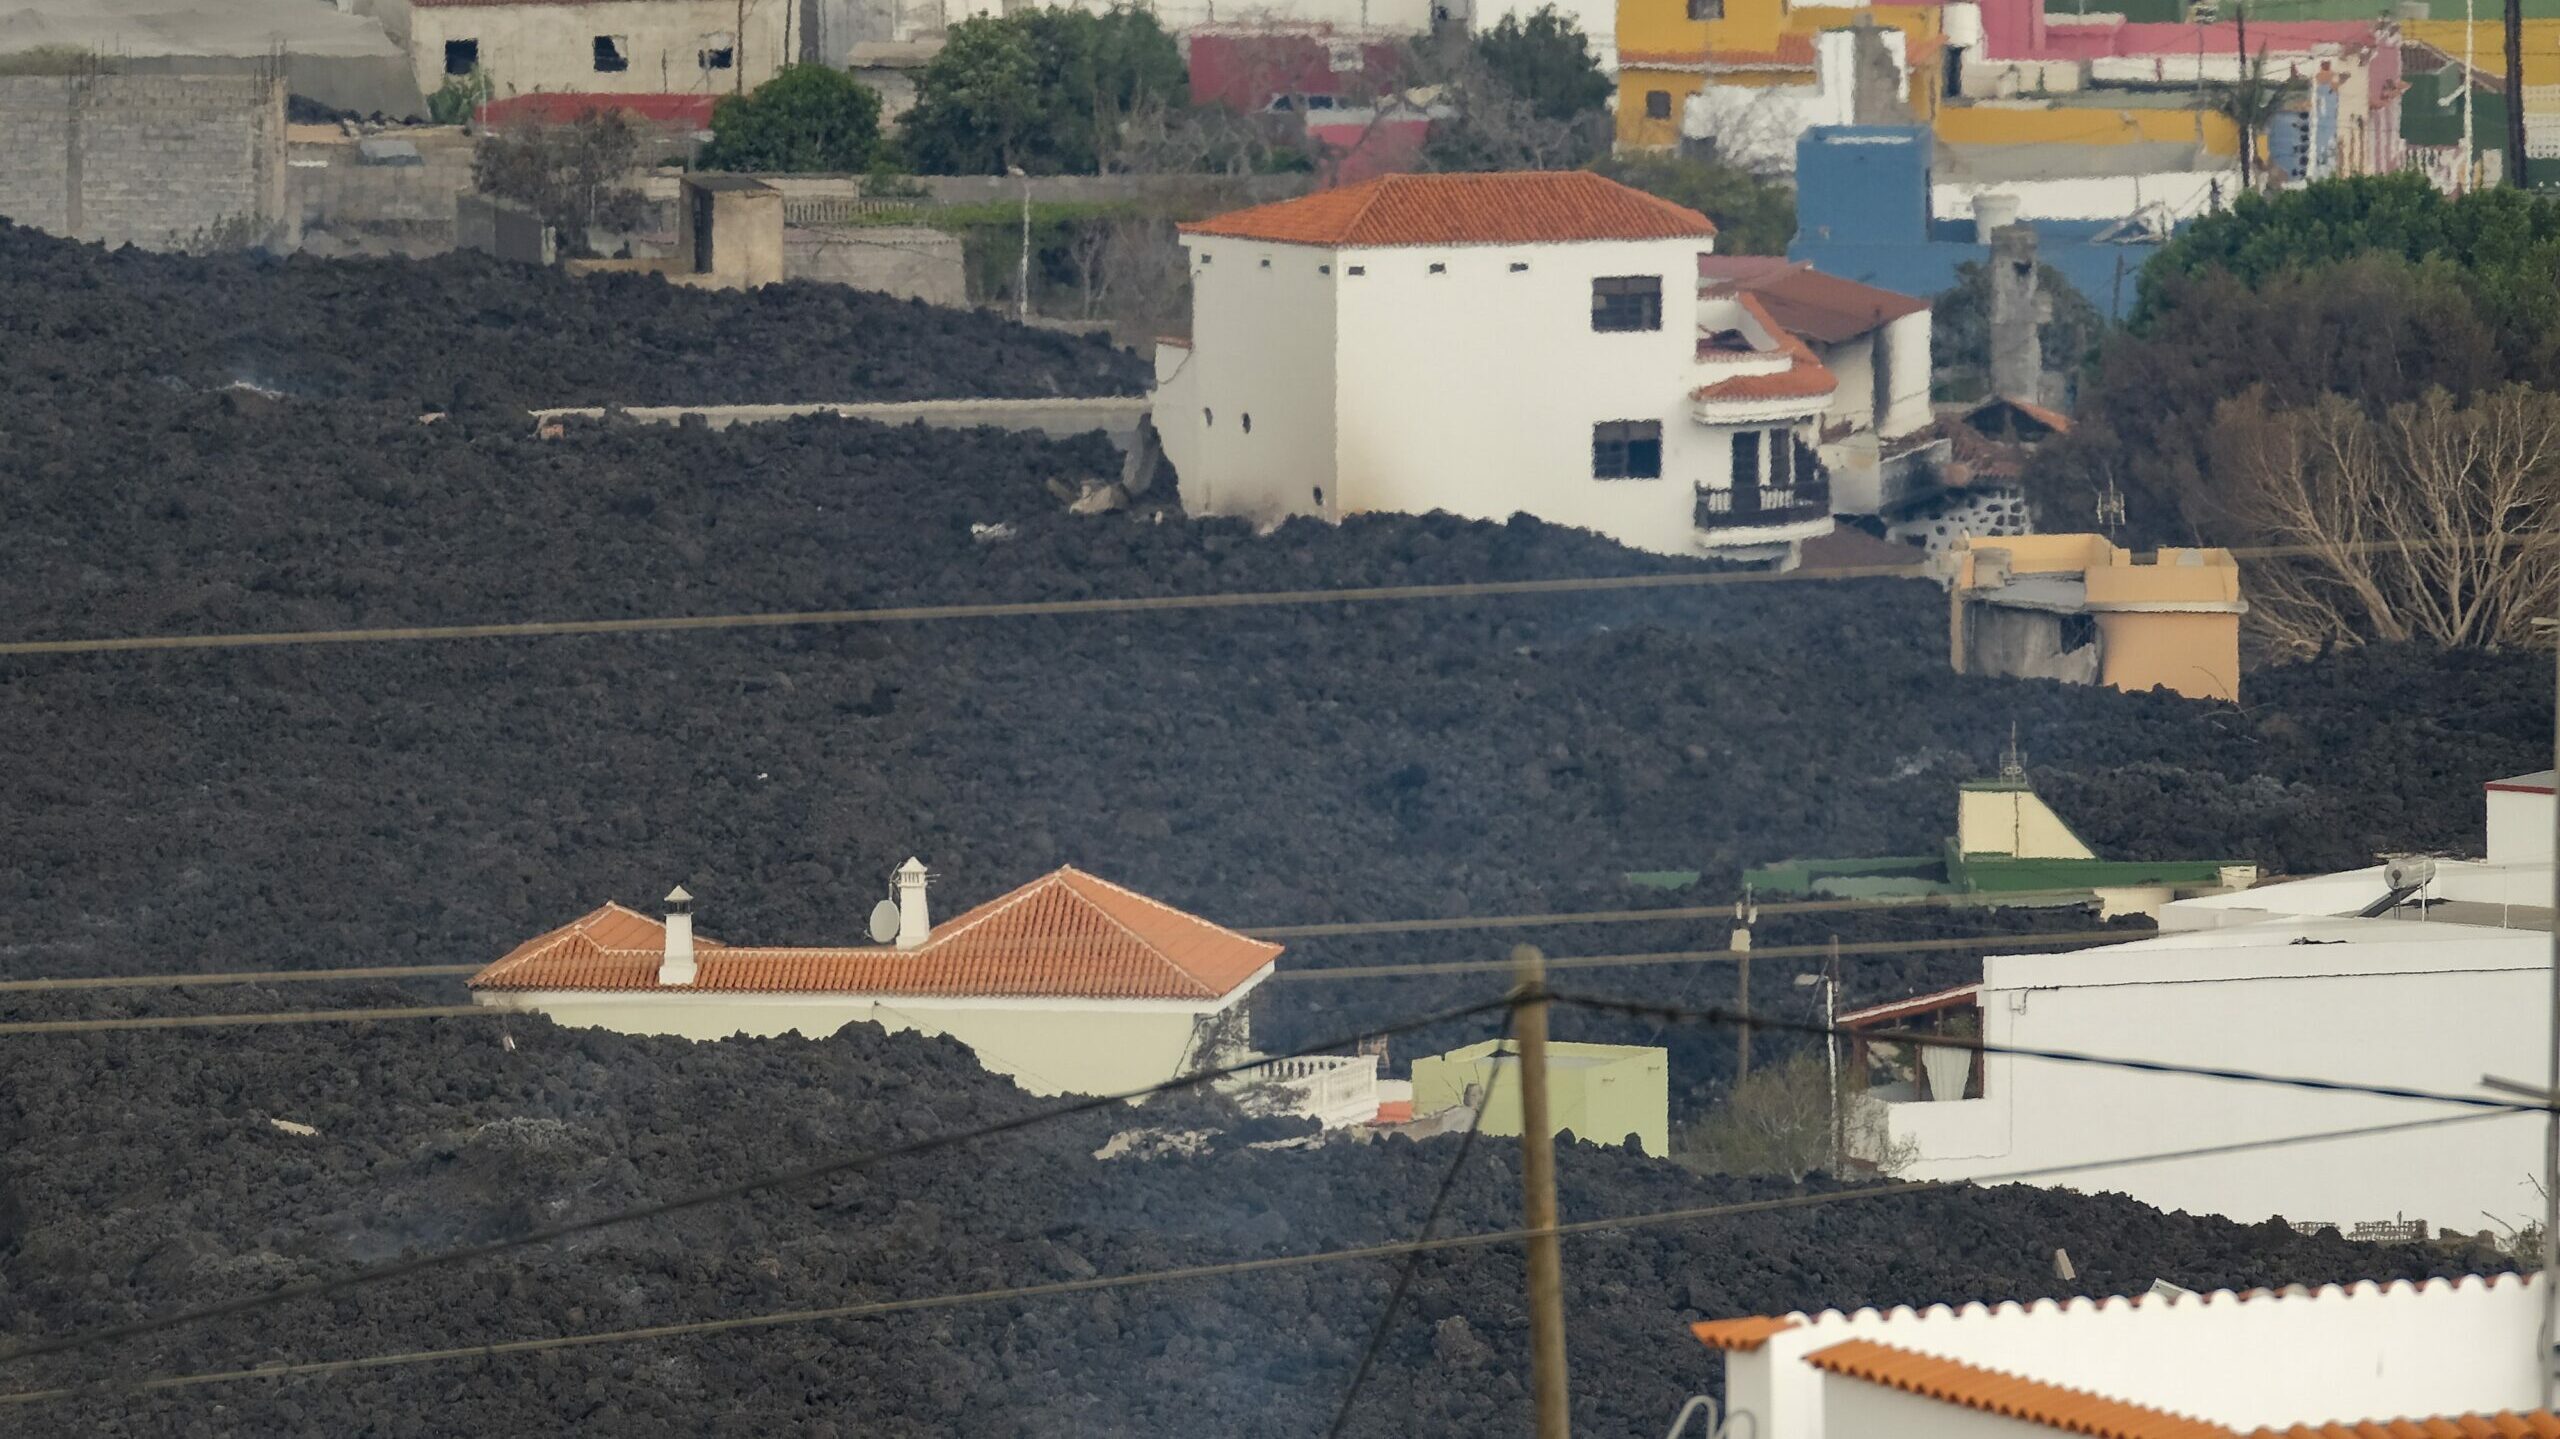 La deformación del terreno en La Palma augura un aumento de las coladas, que afectan ya a 1.291 viviendas